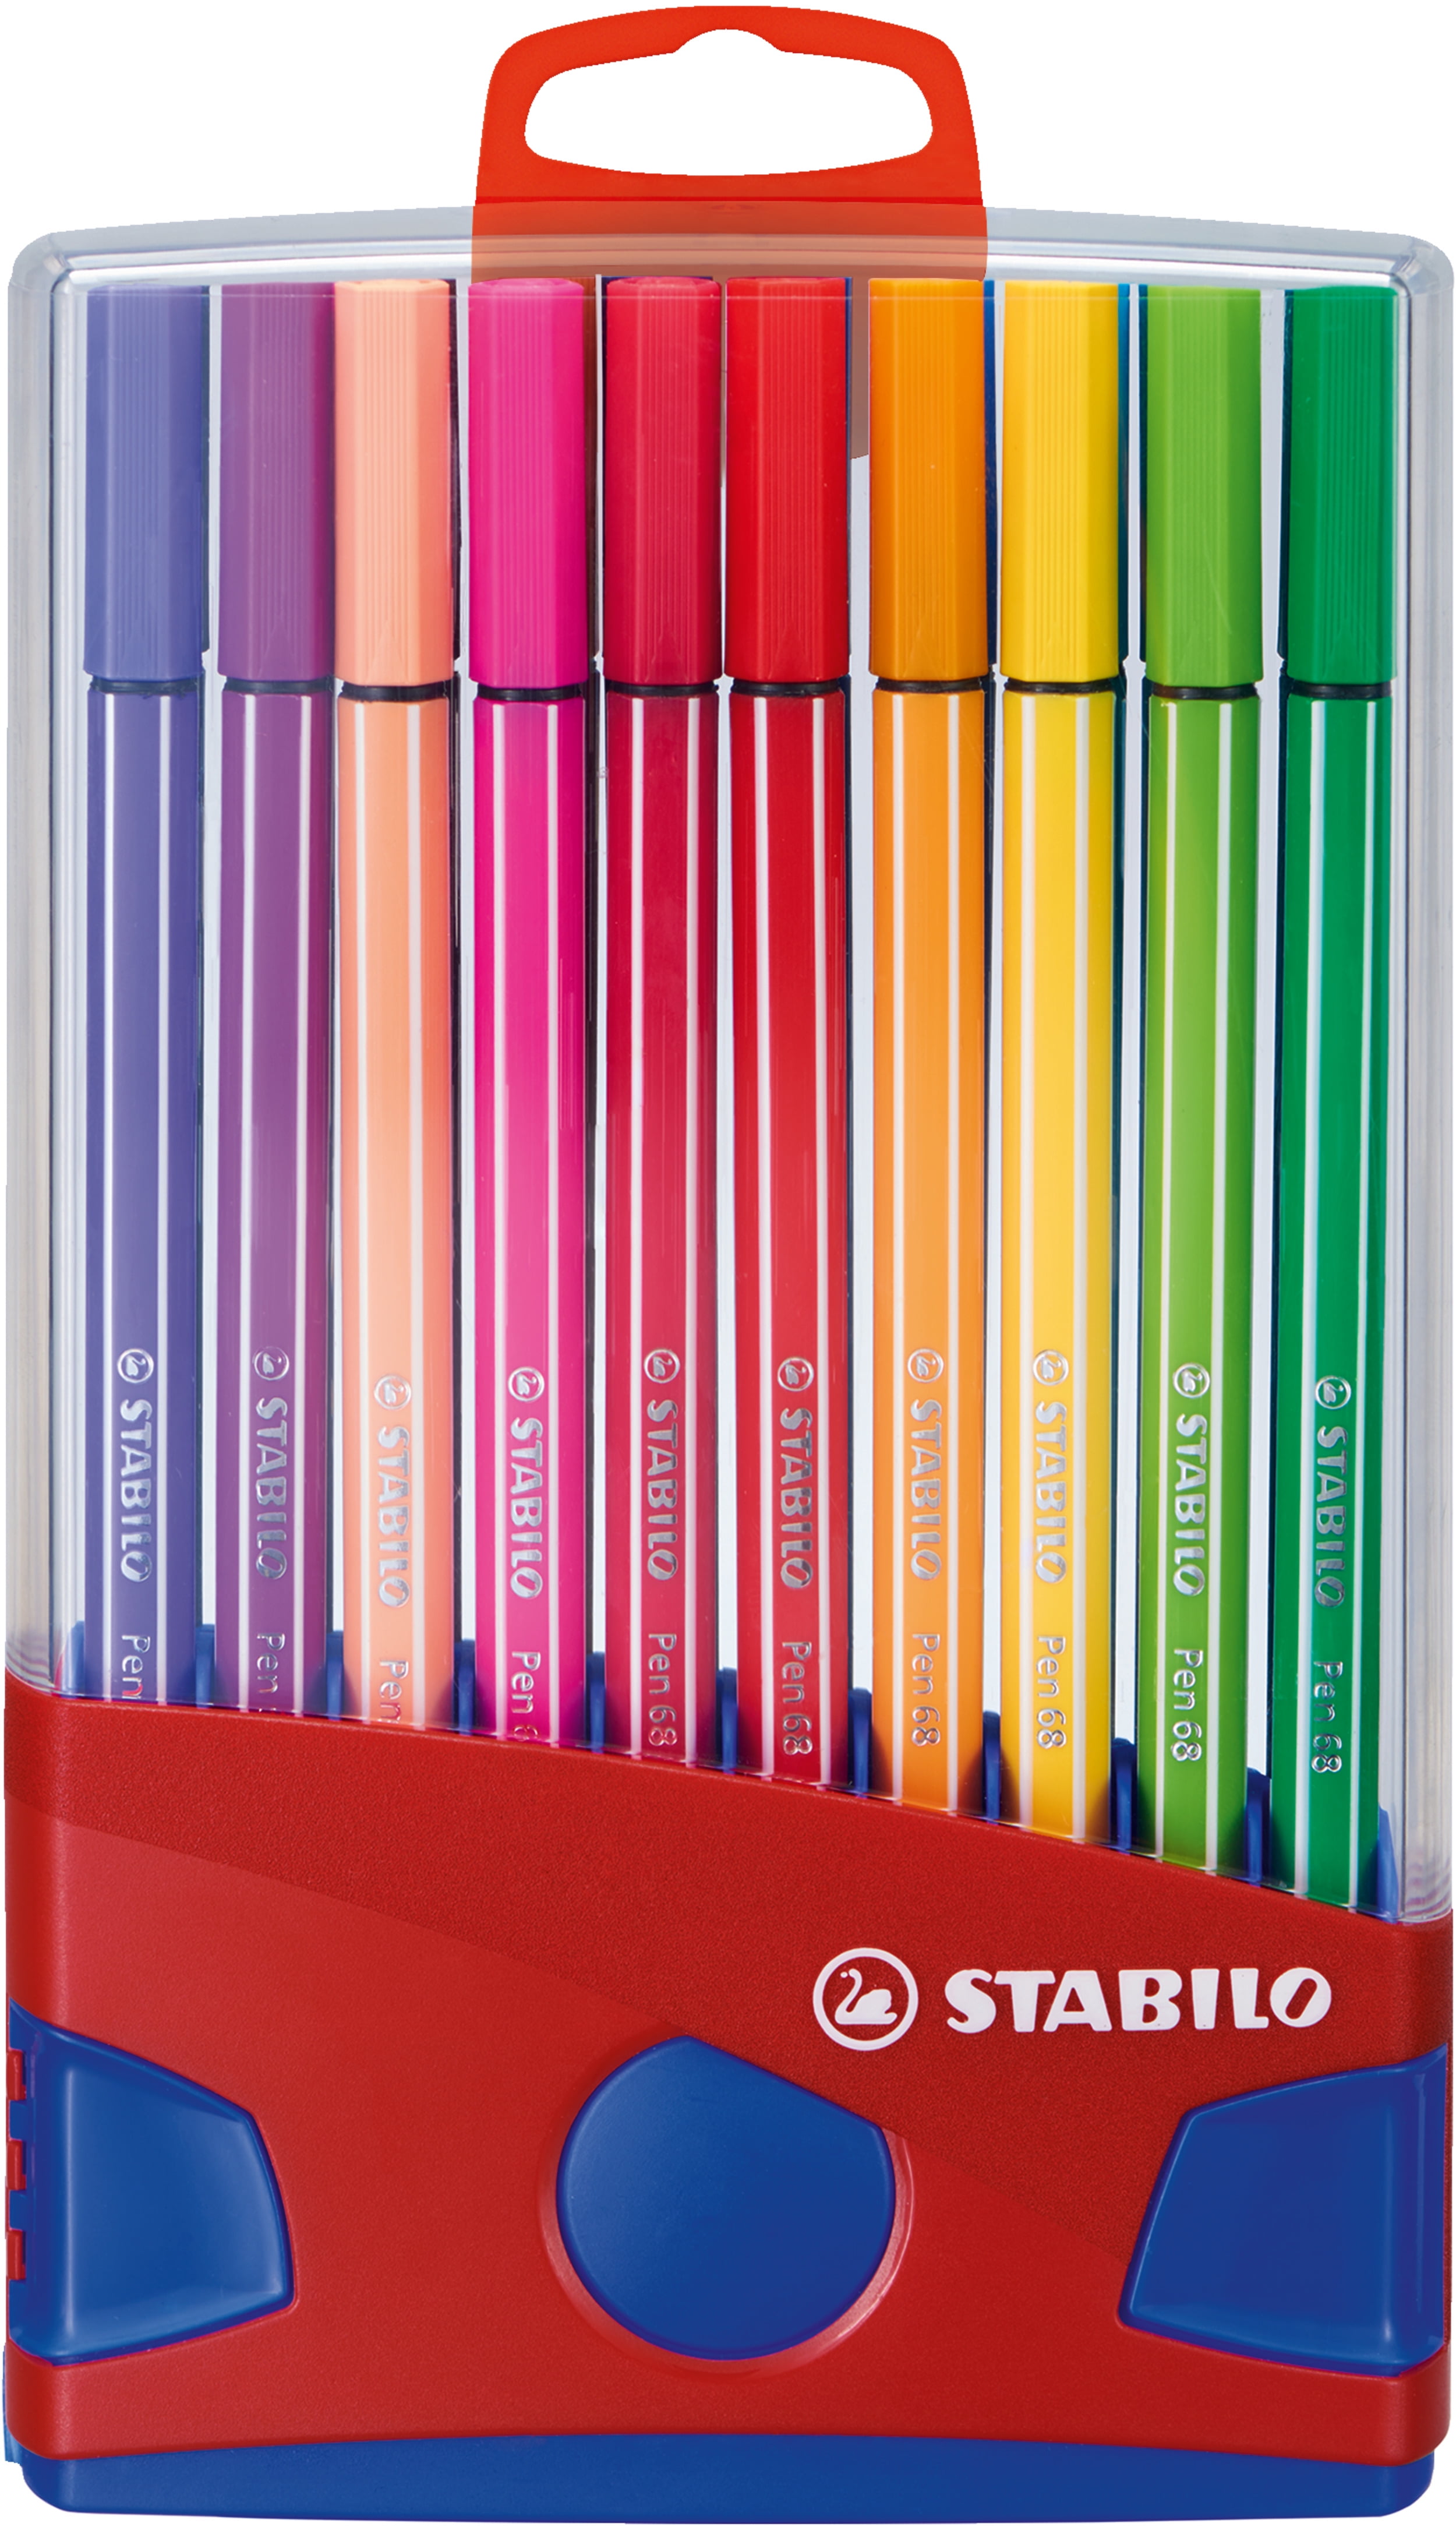 STABILO Pen Color Marker Set, 20-Colors, Hang Tag Pkg. - Walmart.com